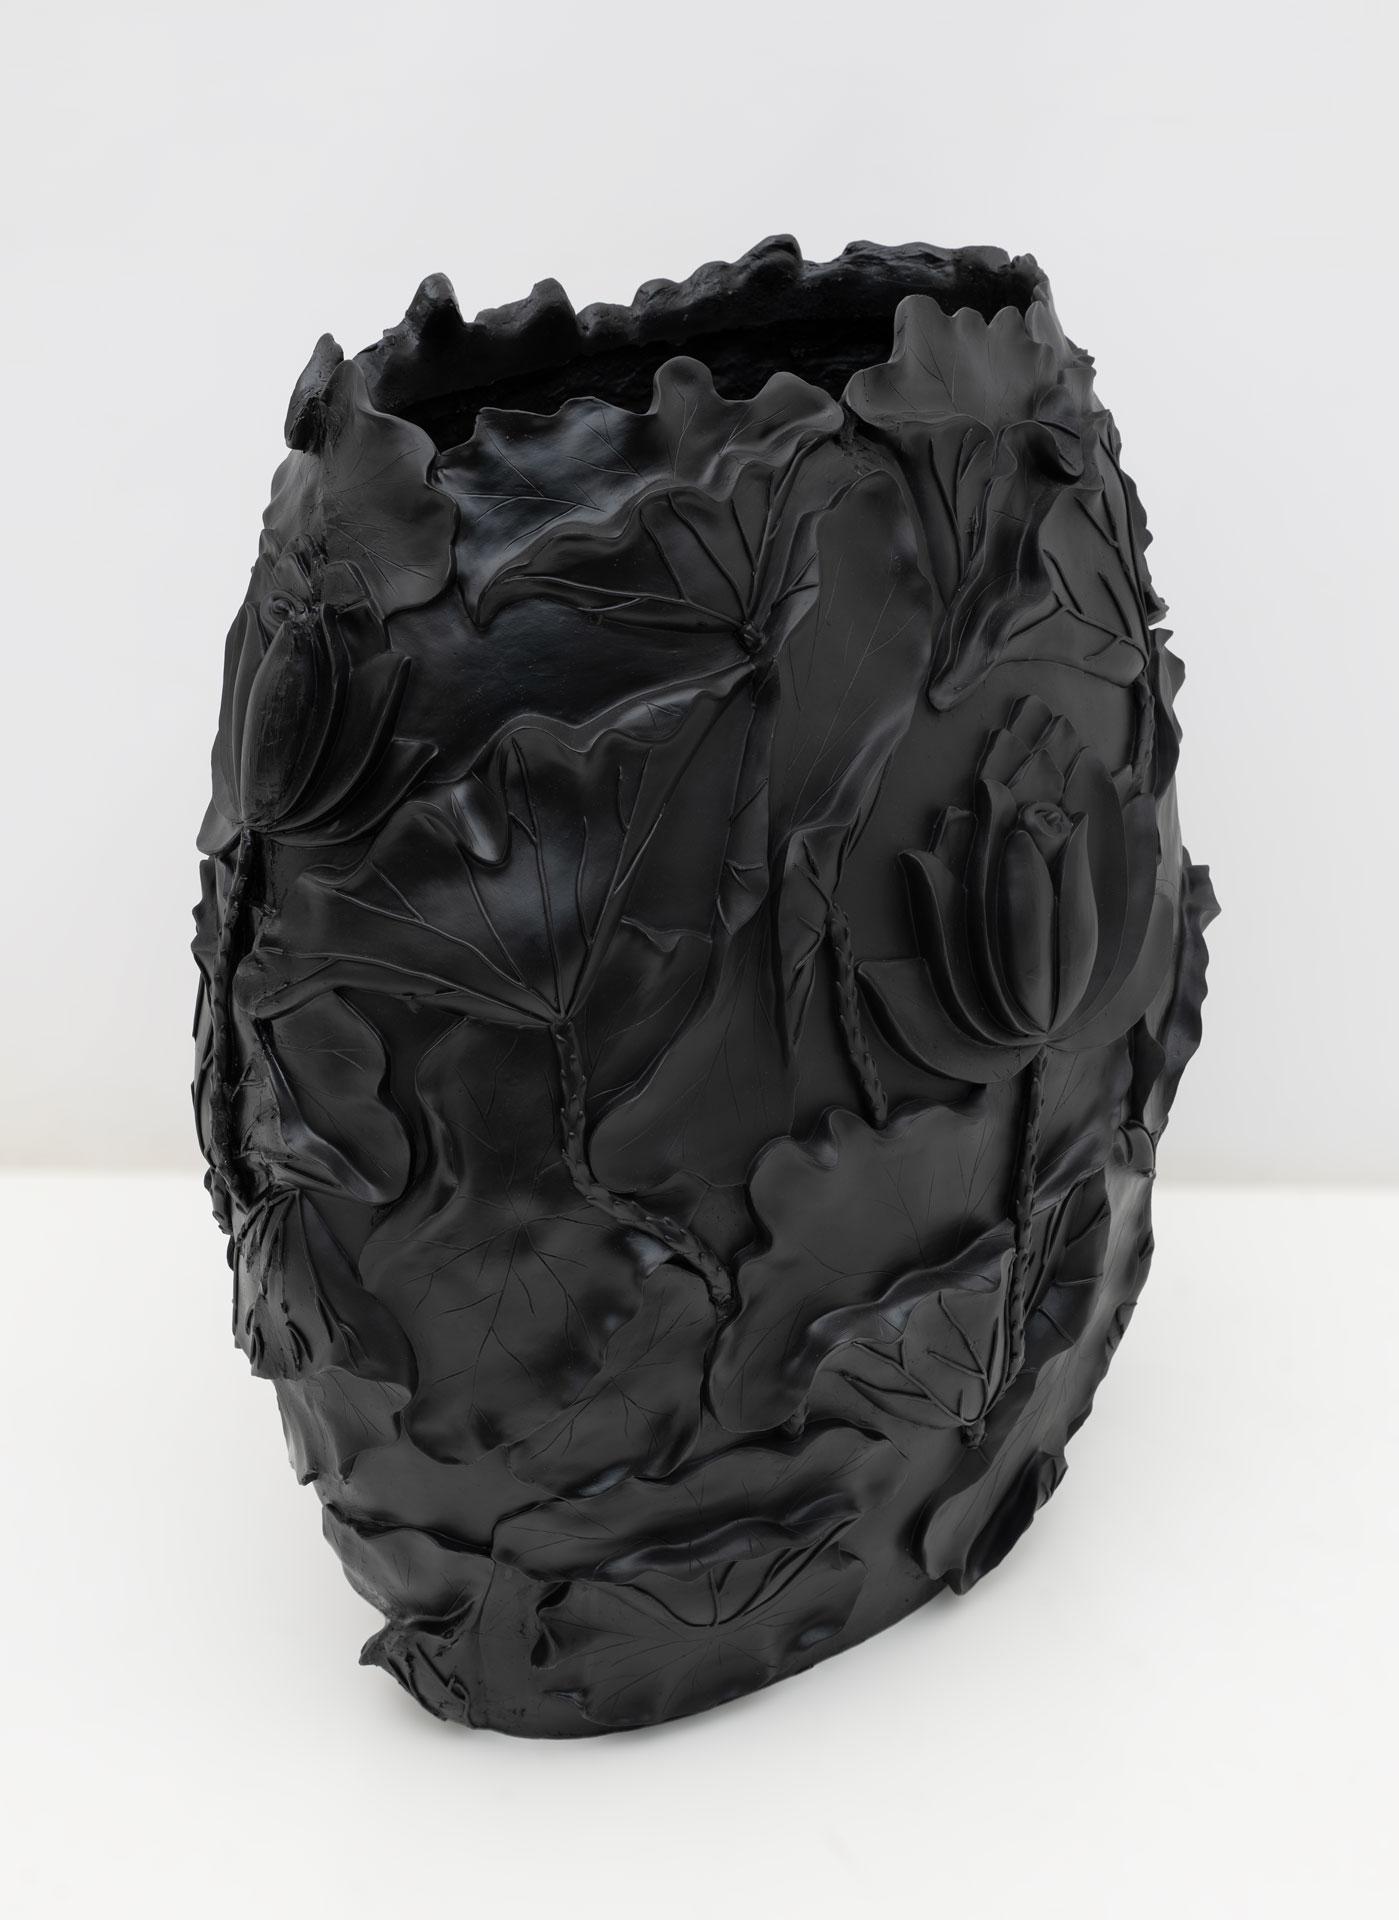 Contemporary VGnewtrend Modern Black Matt Resin Cache-Pot 